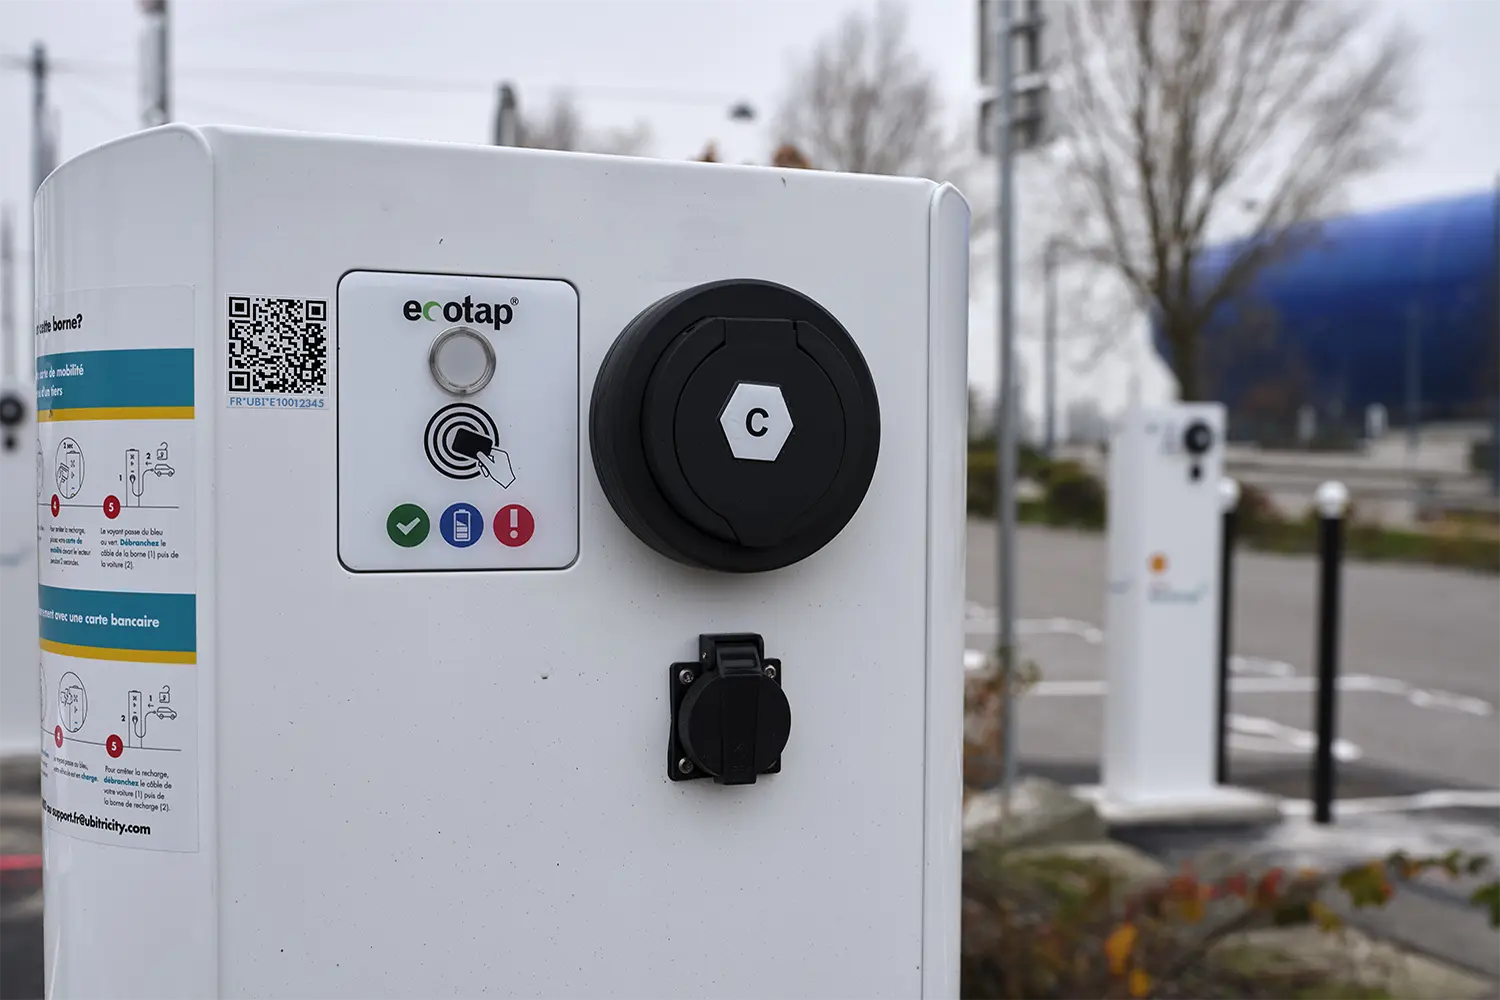 Une station de recharge publique et gérée par ubitricity, où les conducteurs peuvent recharger leurs voitures électriques via QR-COde, même sans s'enregistrer.